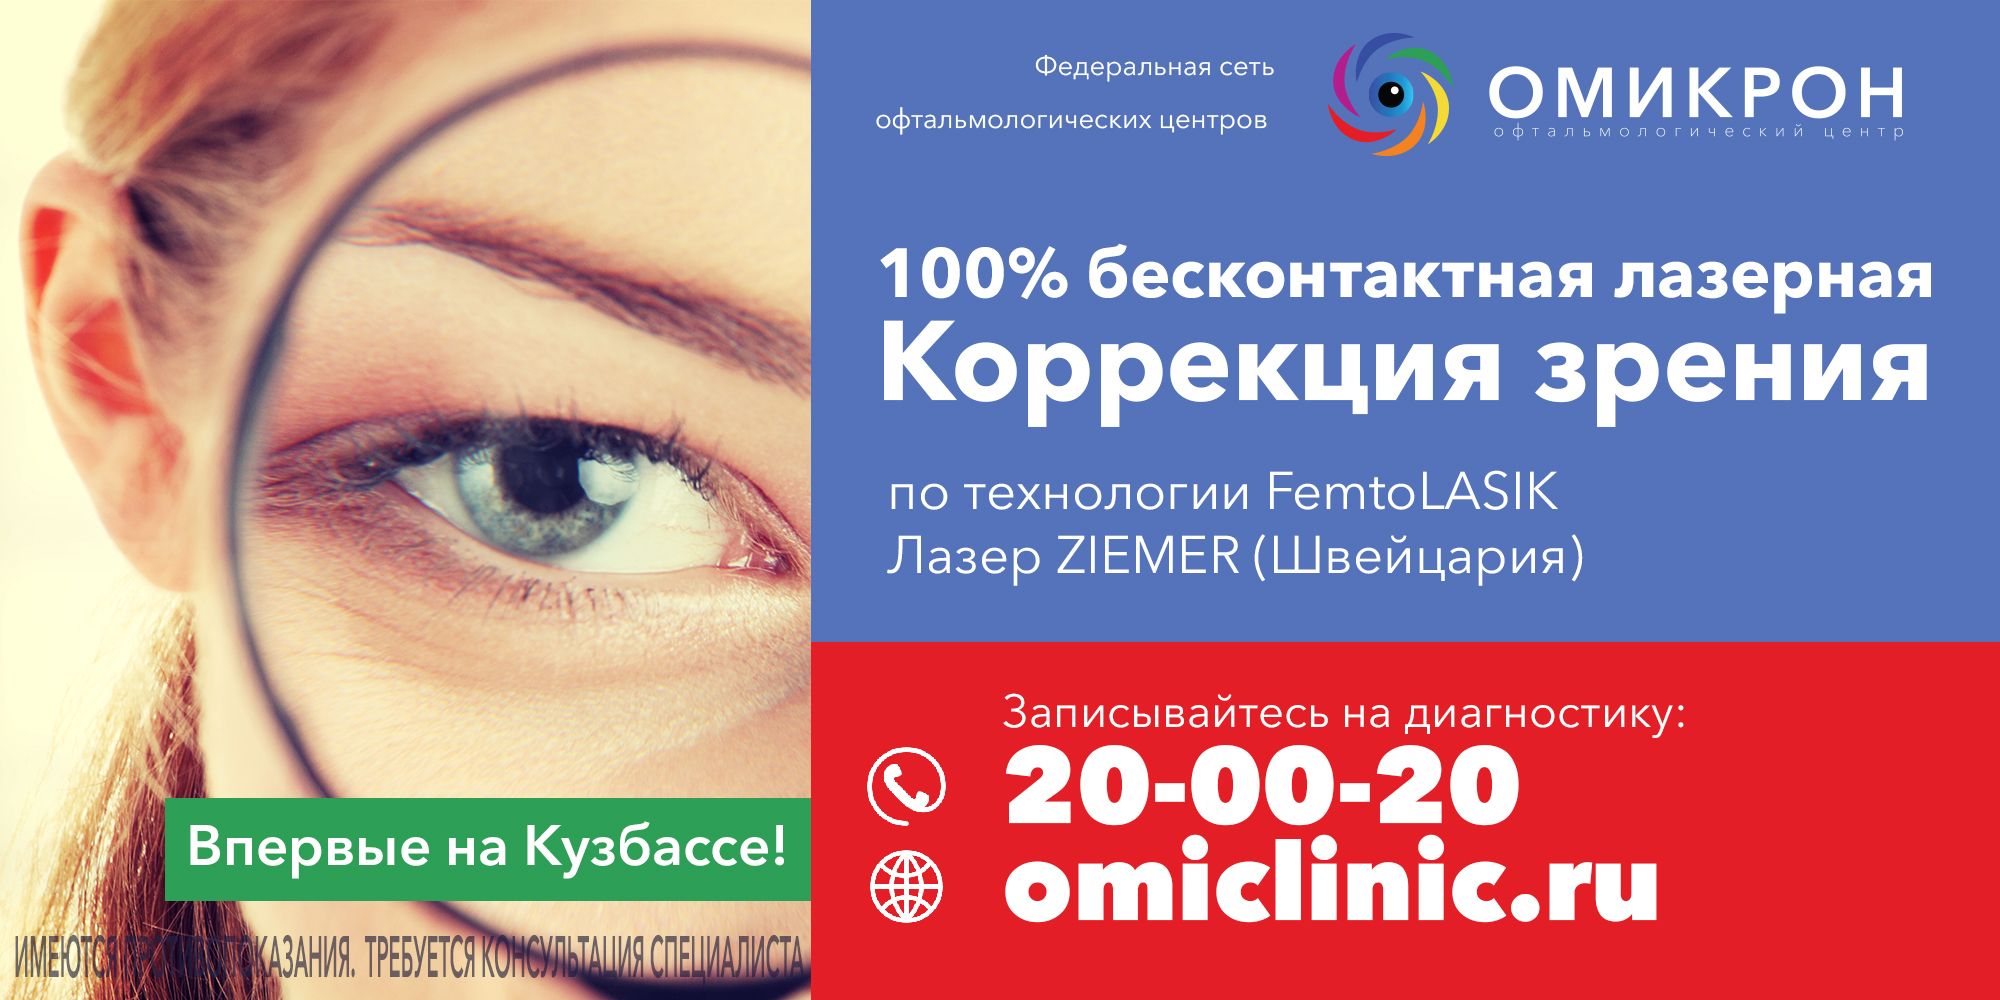 Реклама лазерной коррекции зрения - дизайнер Bobkov